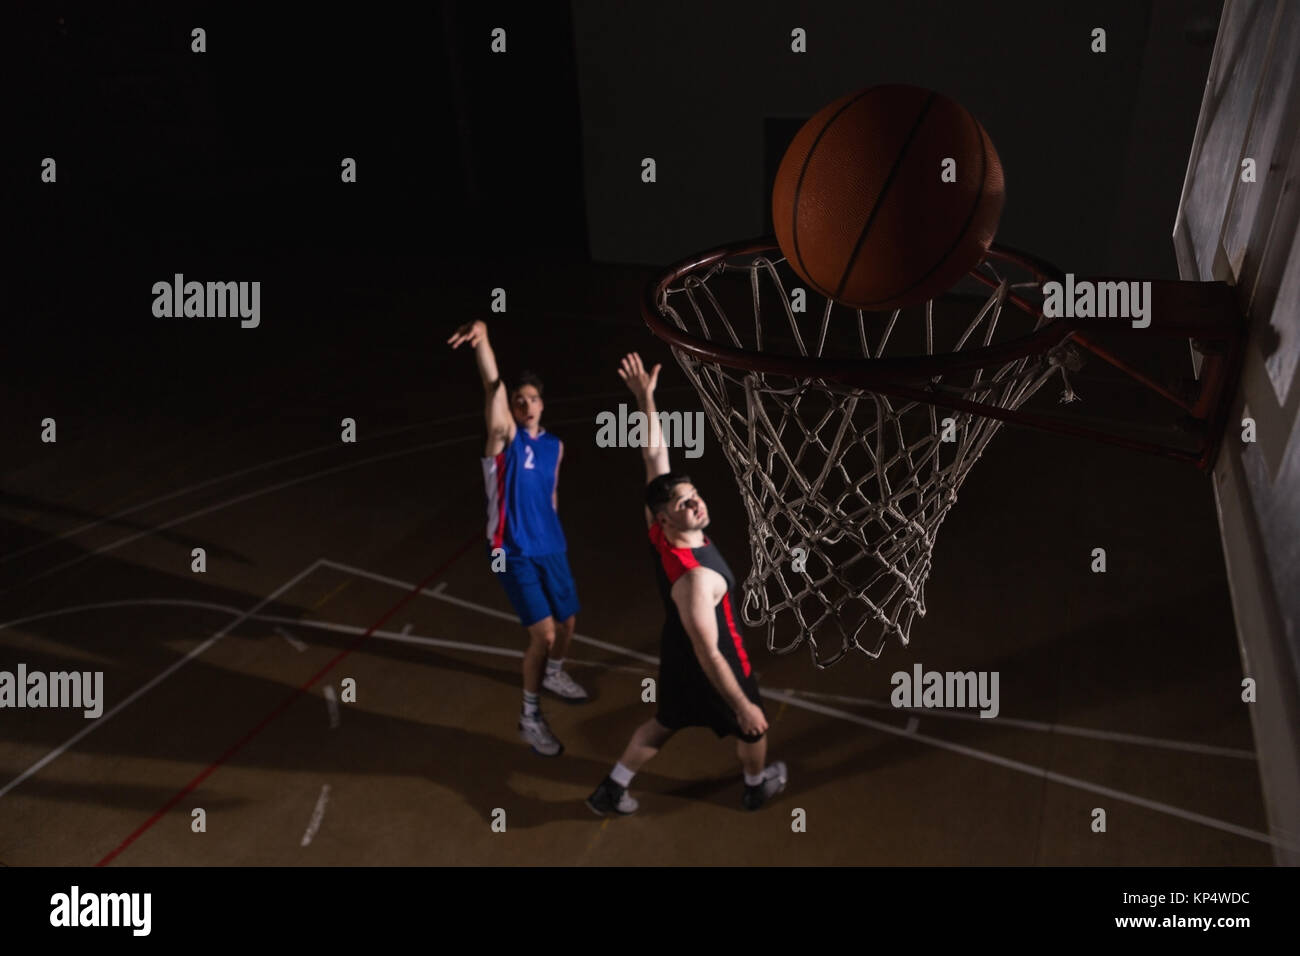 Dos jugadores jugando baloncesto en la corte Foto de stock